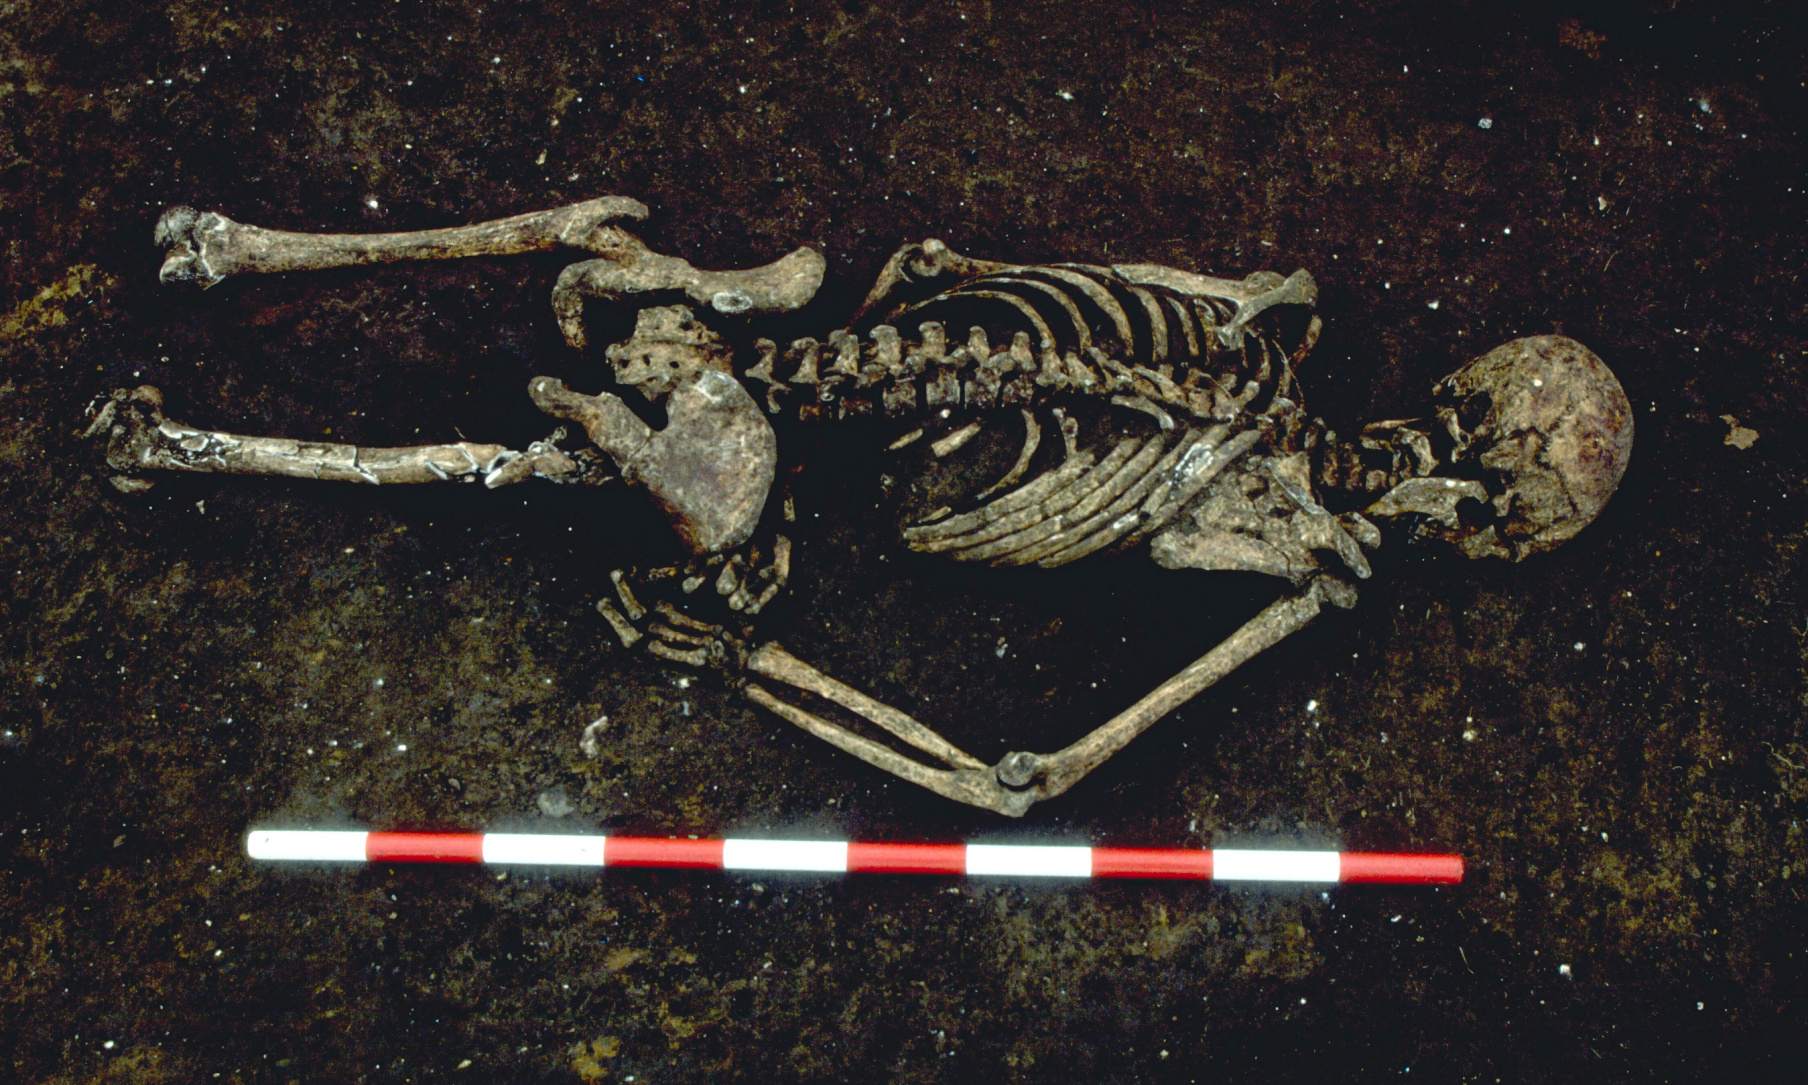 Rangka berusia 1,500 tahun itu ditemui dalam keadaan menghadap ke bawah dengan lengan kanan dibengkokkan pada sudut luar biasa. Penyelidik kajian mengatakan bahawa dia mungkin telah diikat apabila dia meninggal dunia. Badan bawahnya dimusnahkan oleh perkembangan zaman moden.